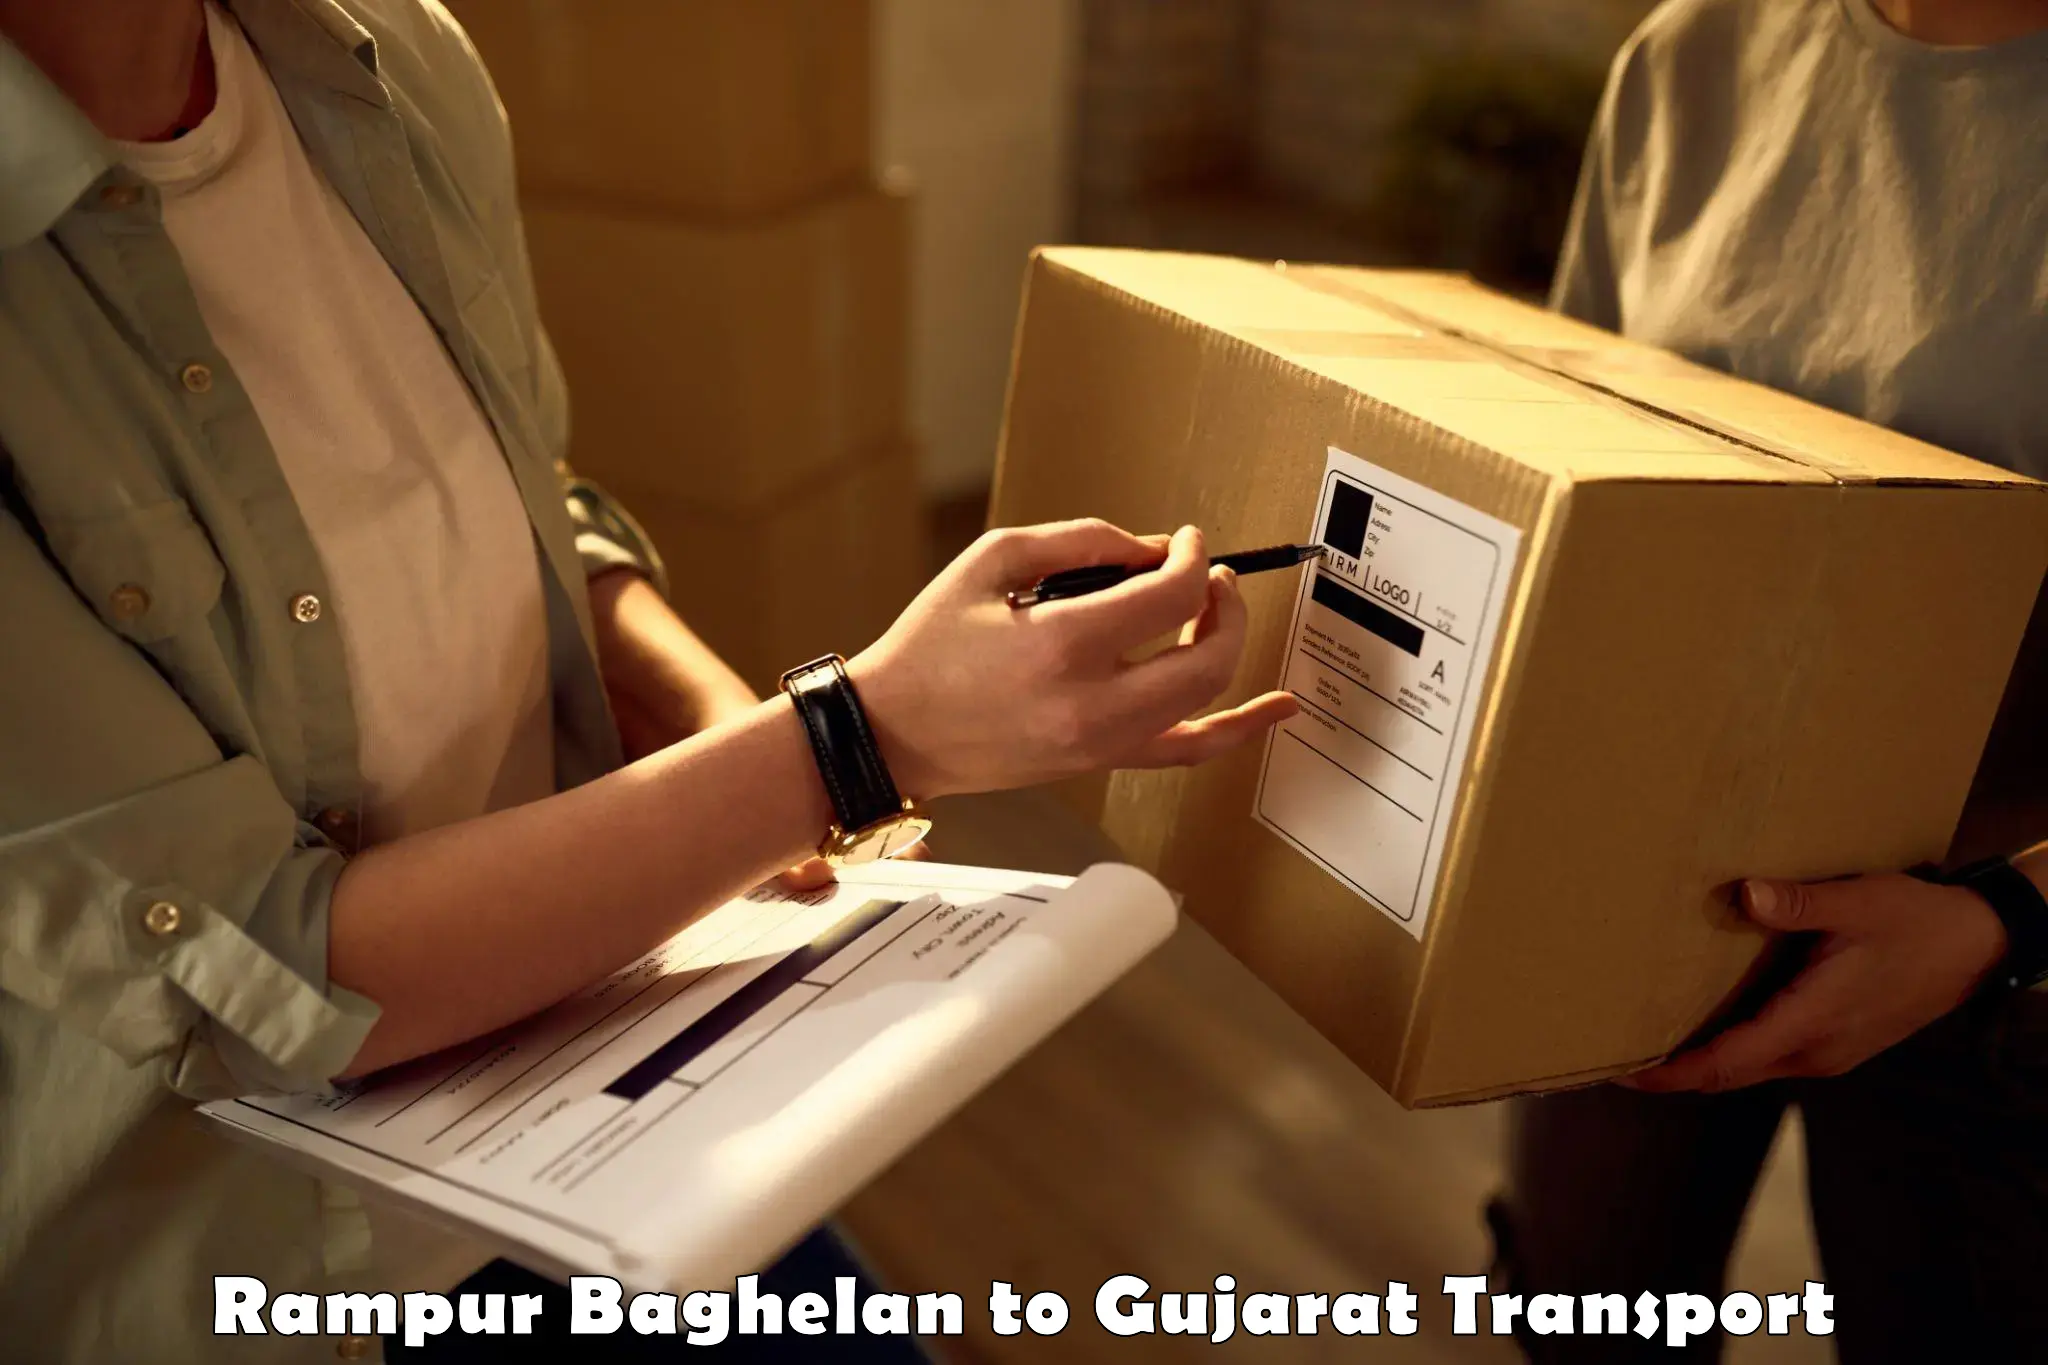 Online transport service Rampur Baghelan to Junagadh